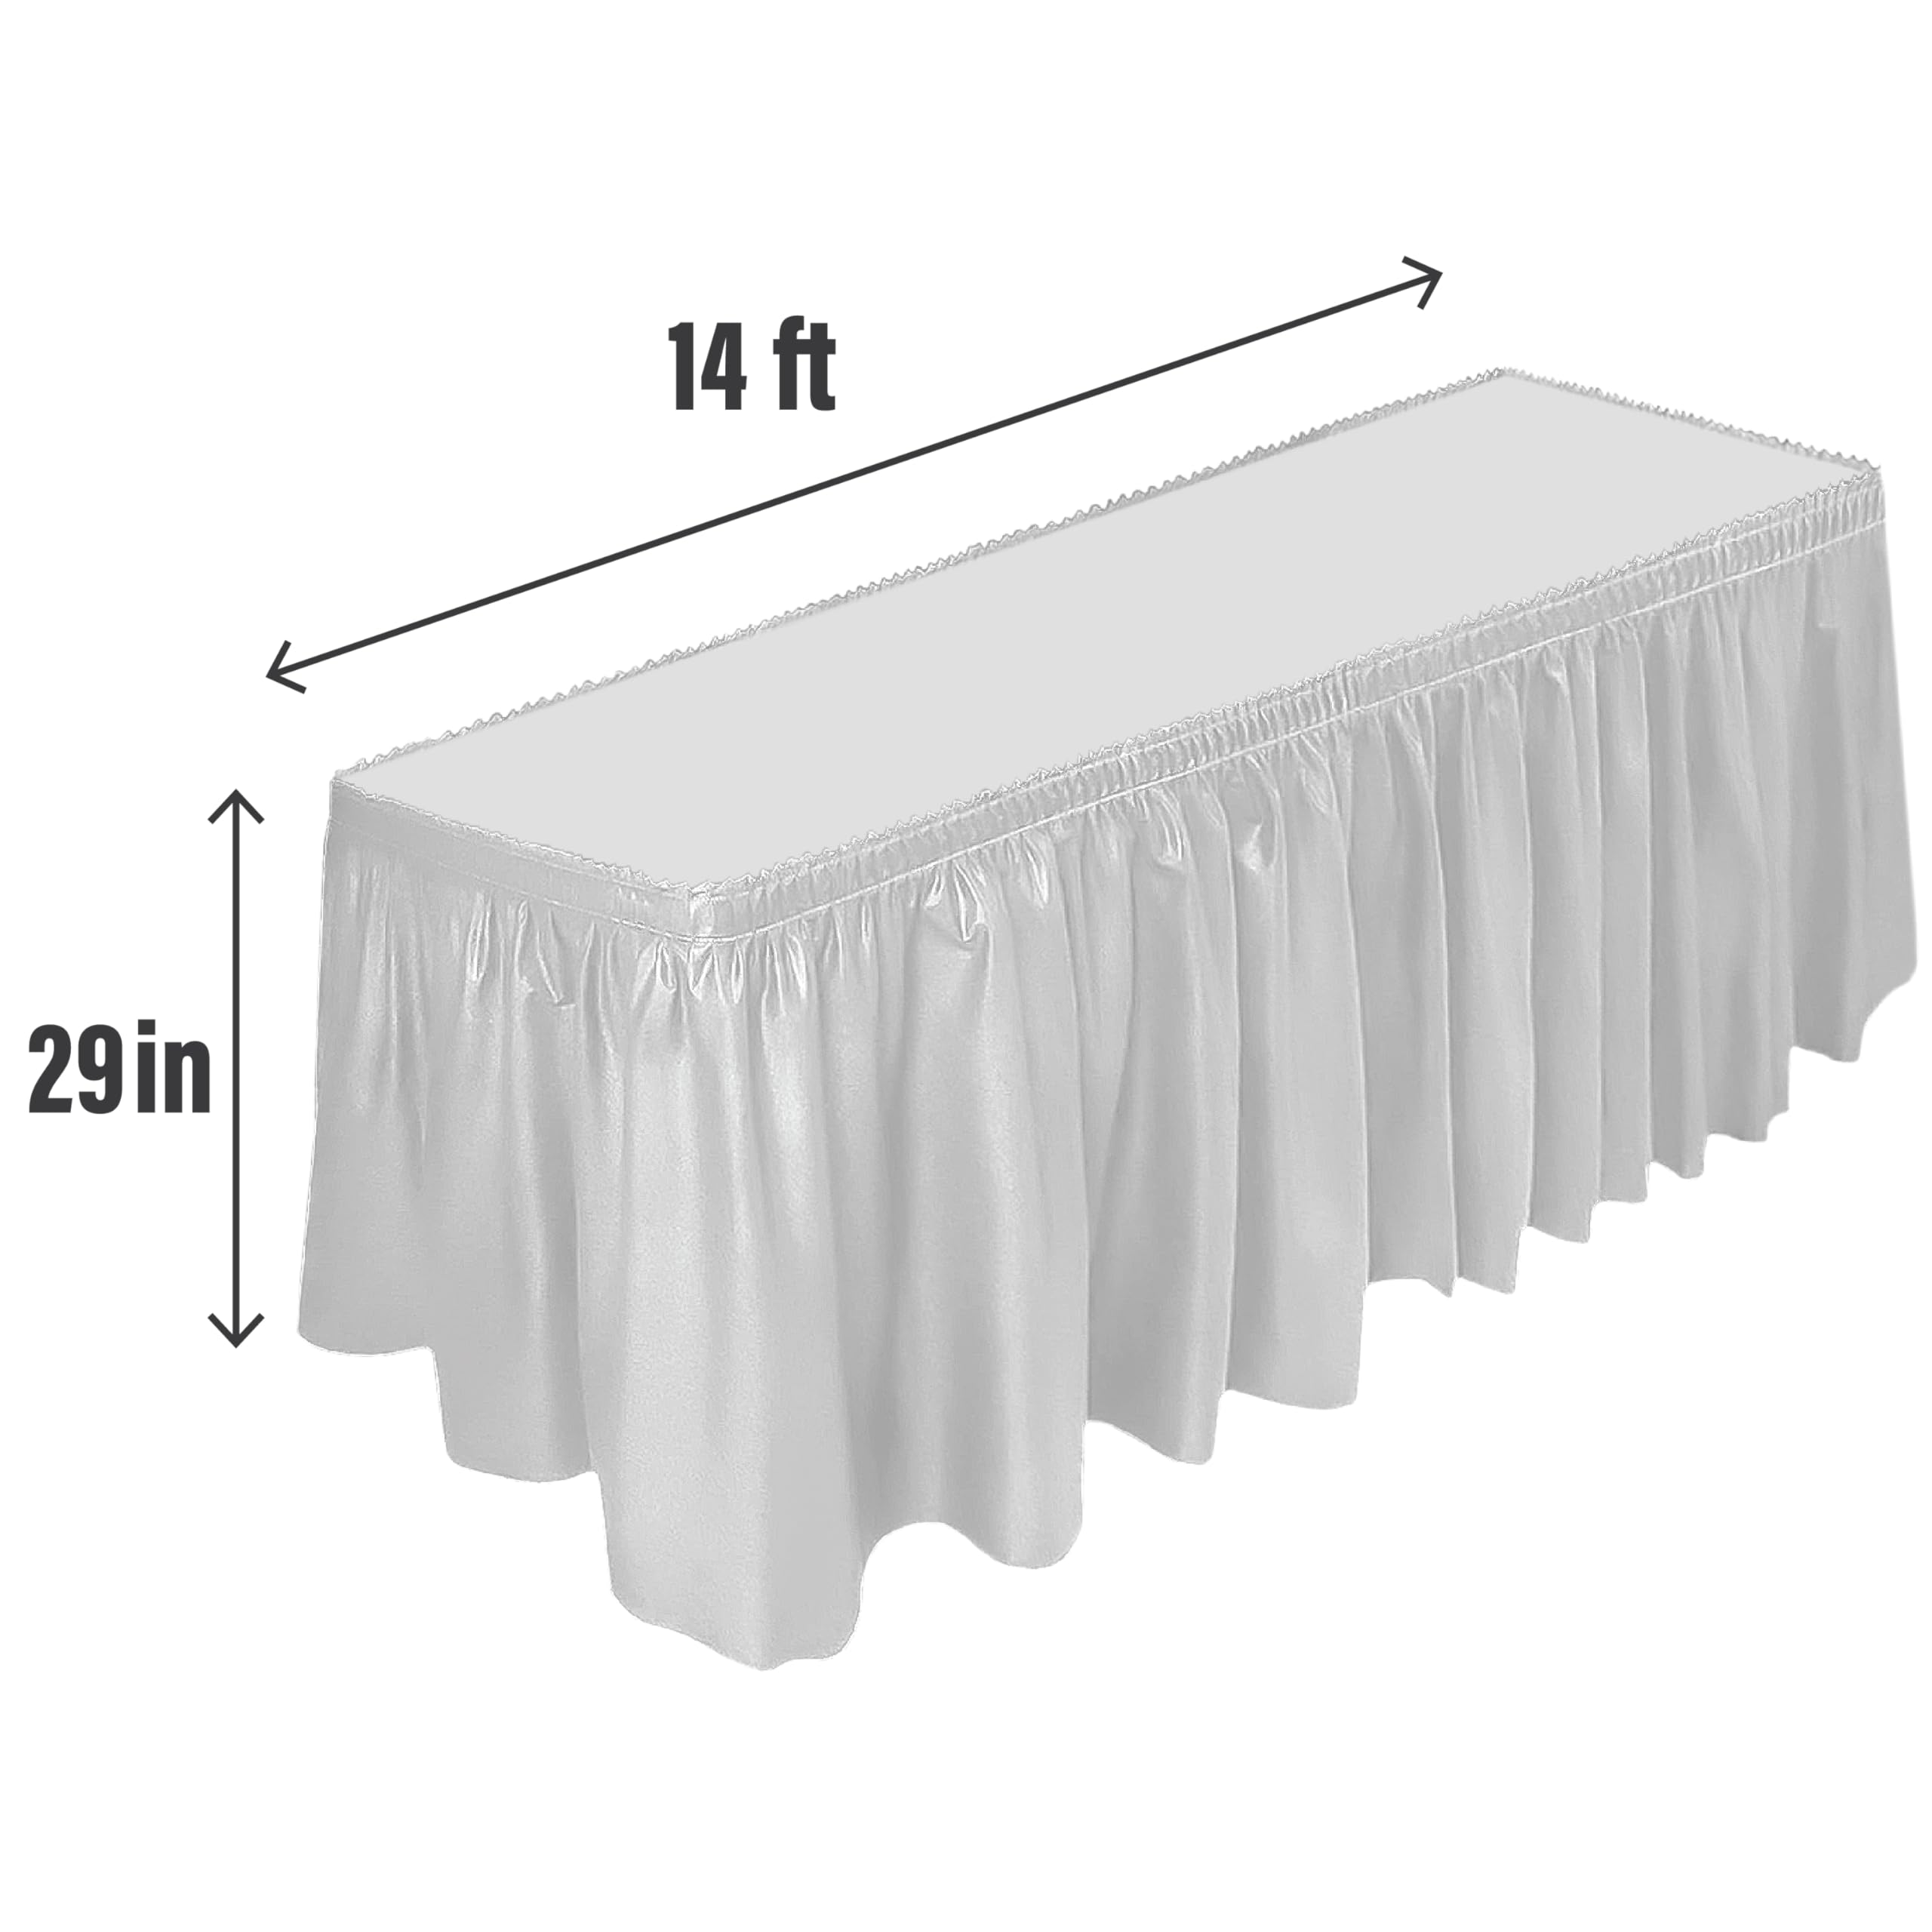 DecorRack 2 Pack Table Skirts, 29 in x 14 ft Each, Multi Pack -BPA Free- Plastic Tableskirt, Disposable, Reusable, Rectangular Tablecloth Skirt, White (2 Pack)